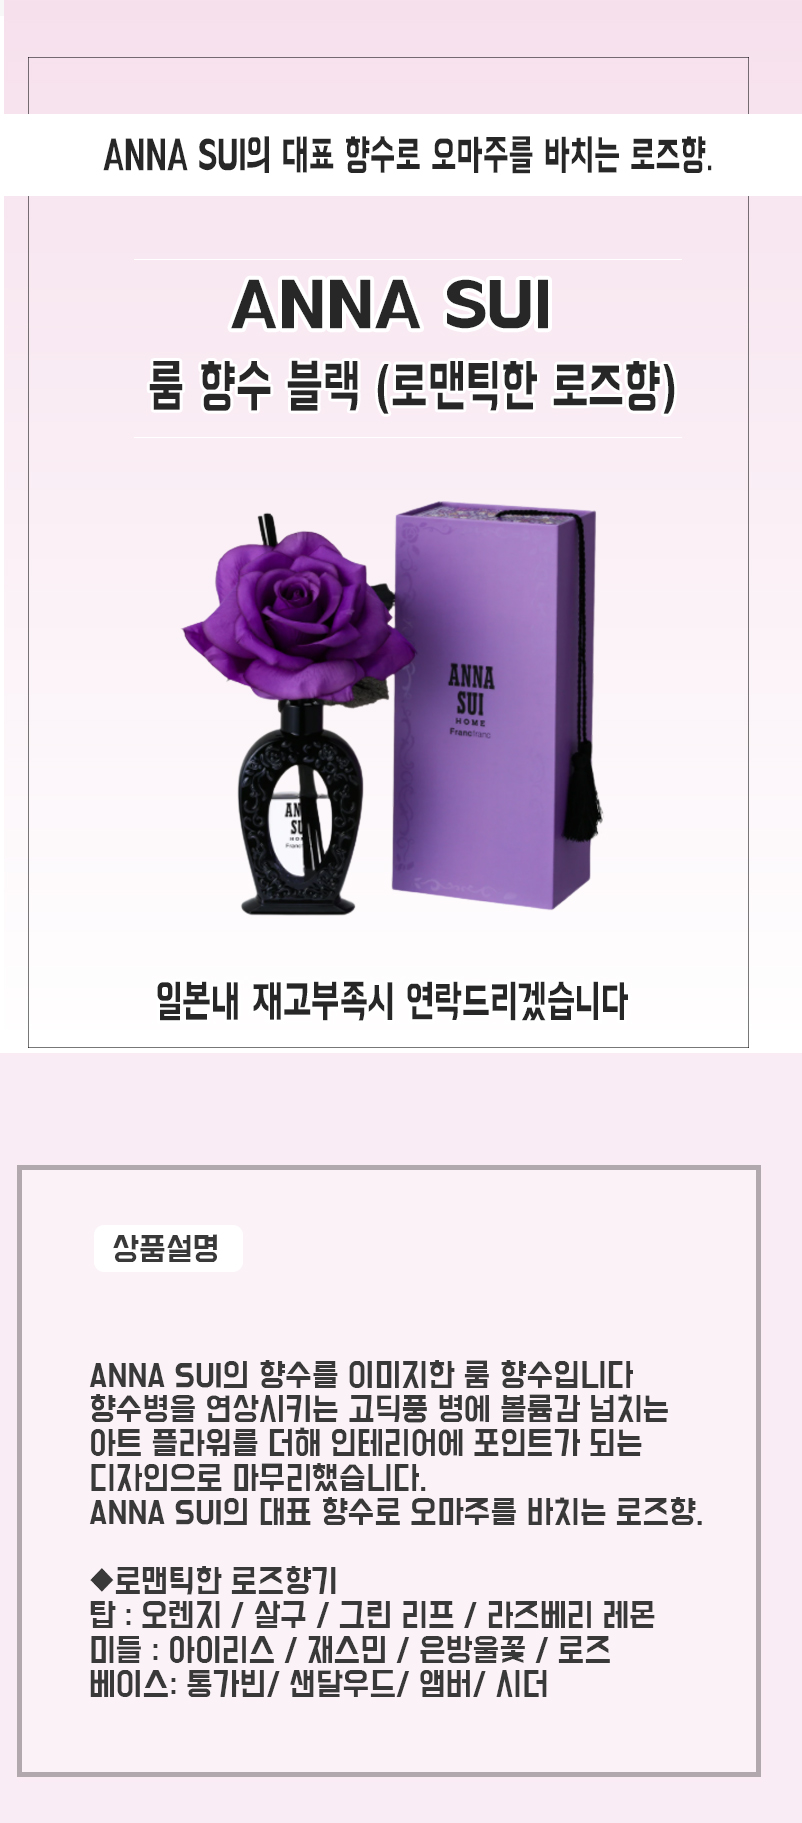 ANNA SUI 룸 향수 블랙 (로맨틱한 로즈향) 안나수이